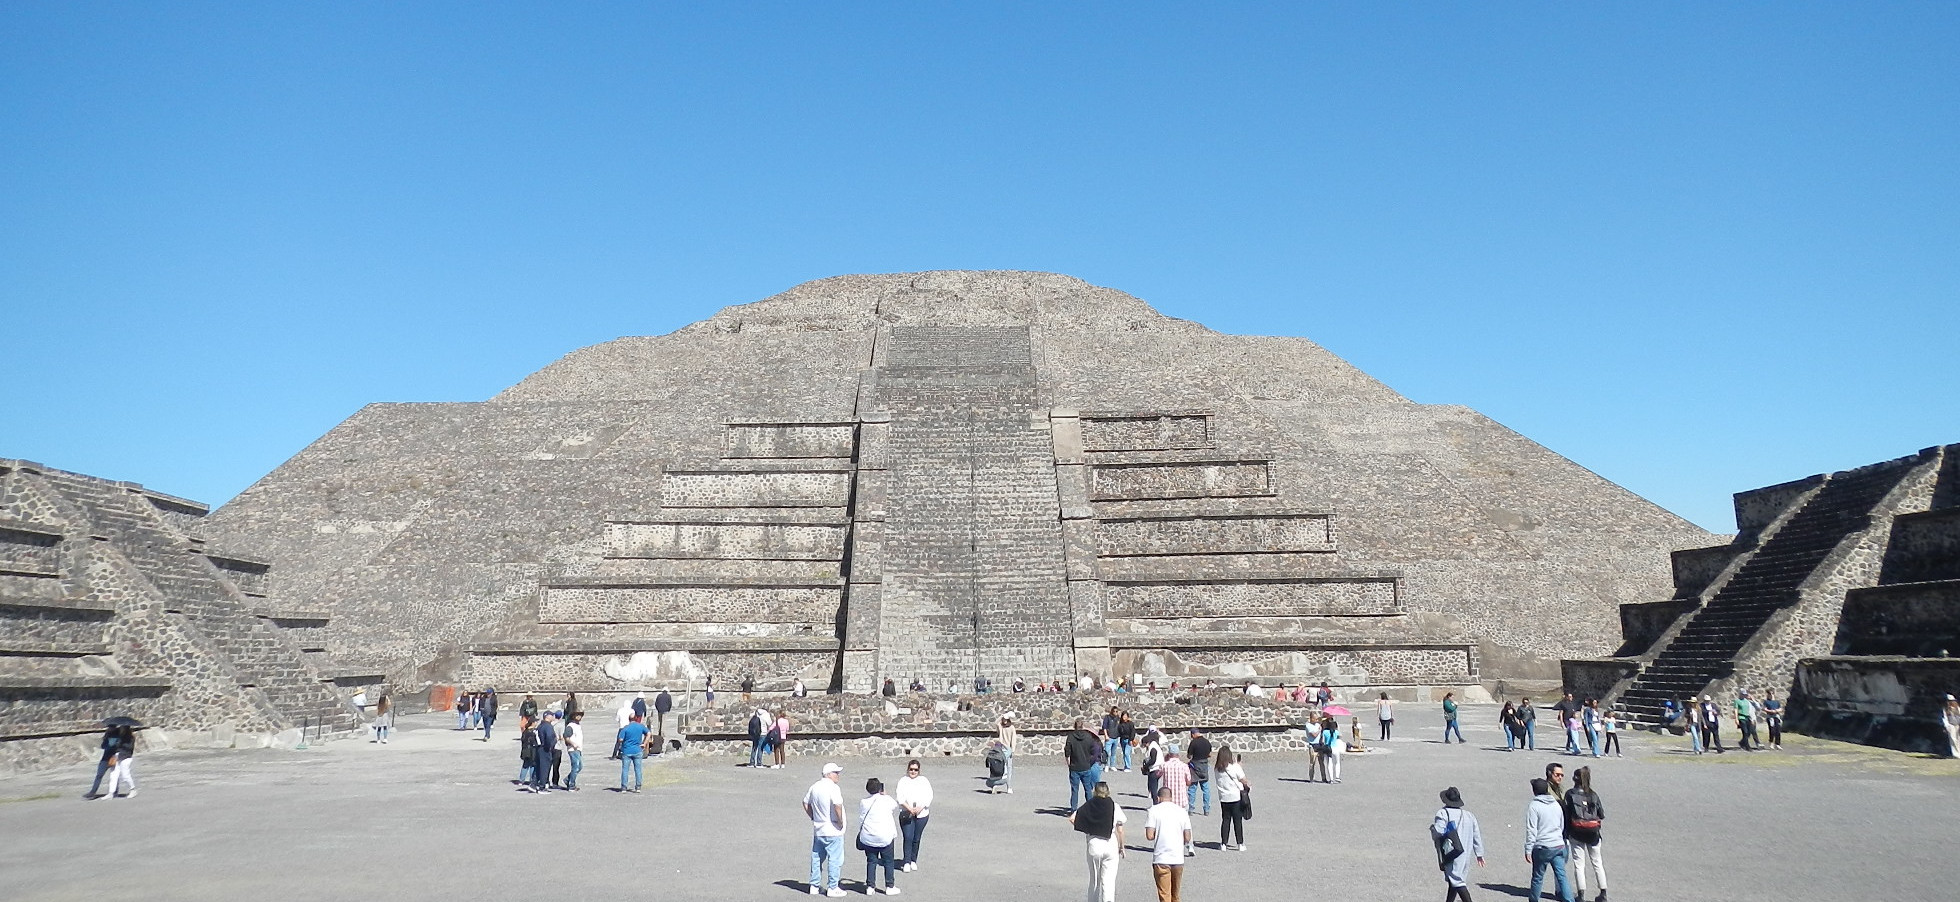 テオティワカン遺跡月のピラミッド